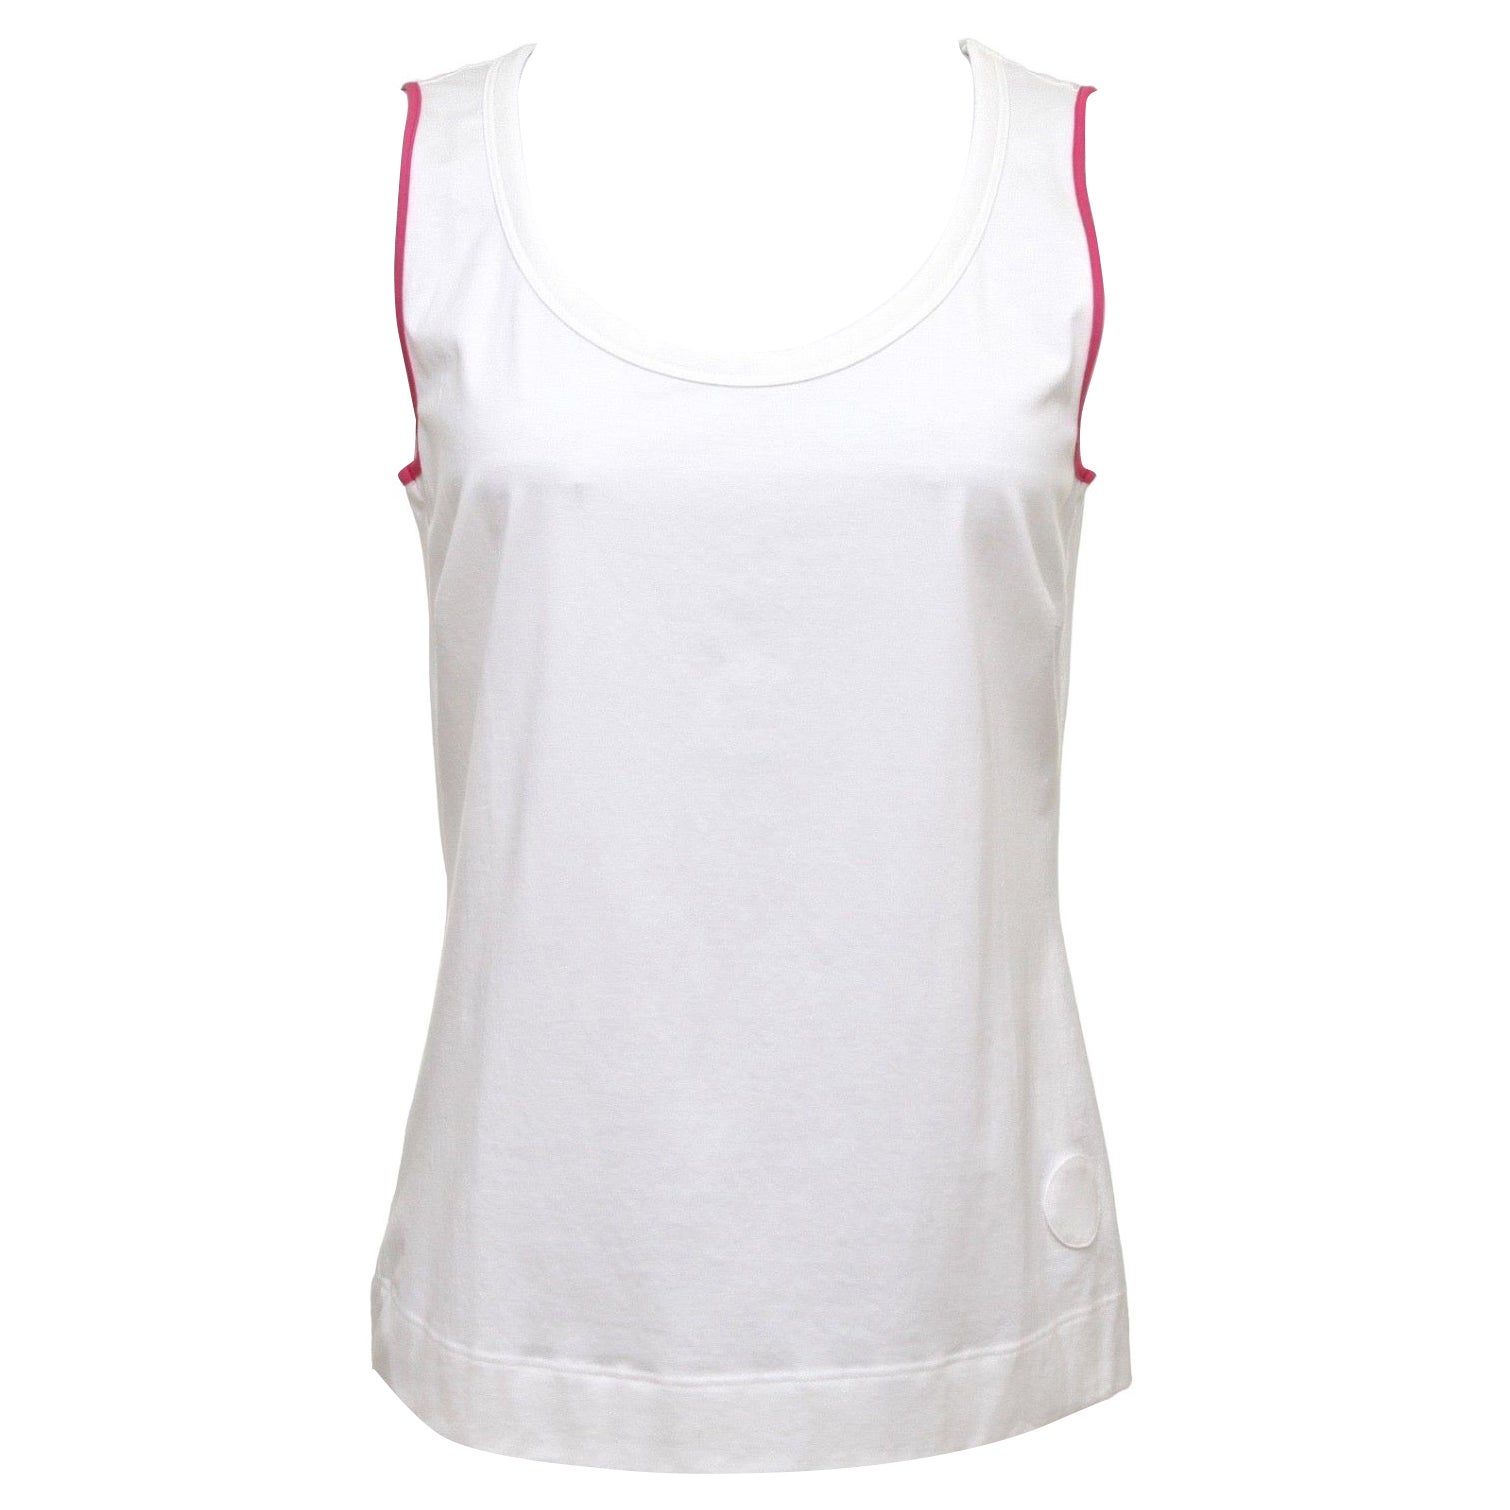 AKRIS PUNTO White Top Cotton Blouse Dress Shirt Magenta Sleeveless Shell 10 For Sale